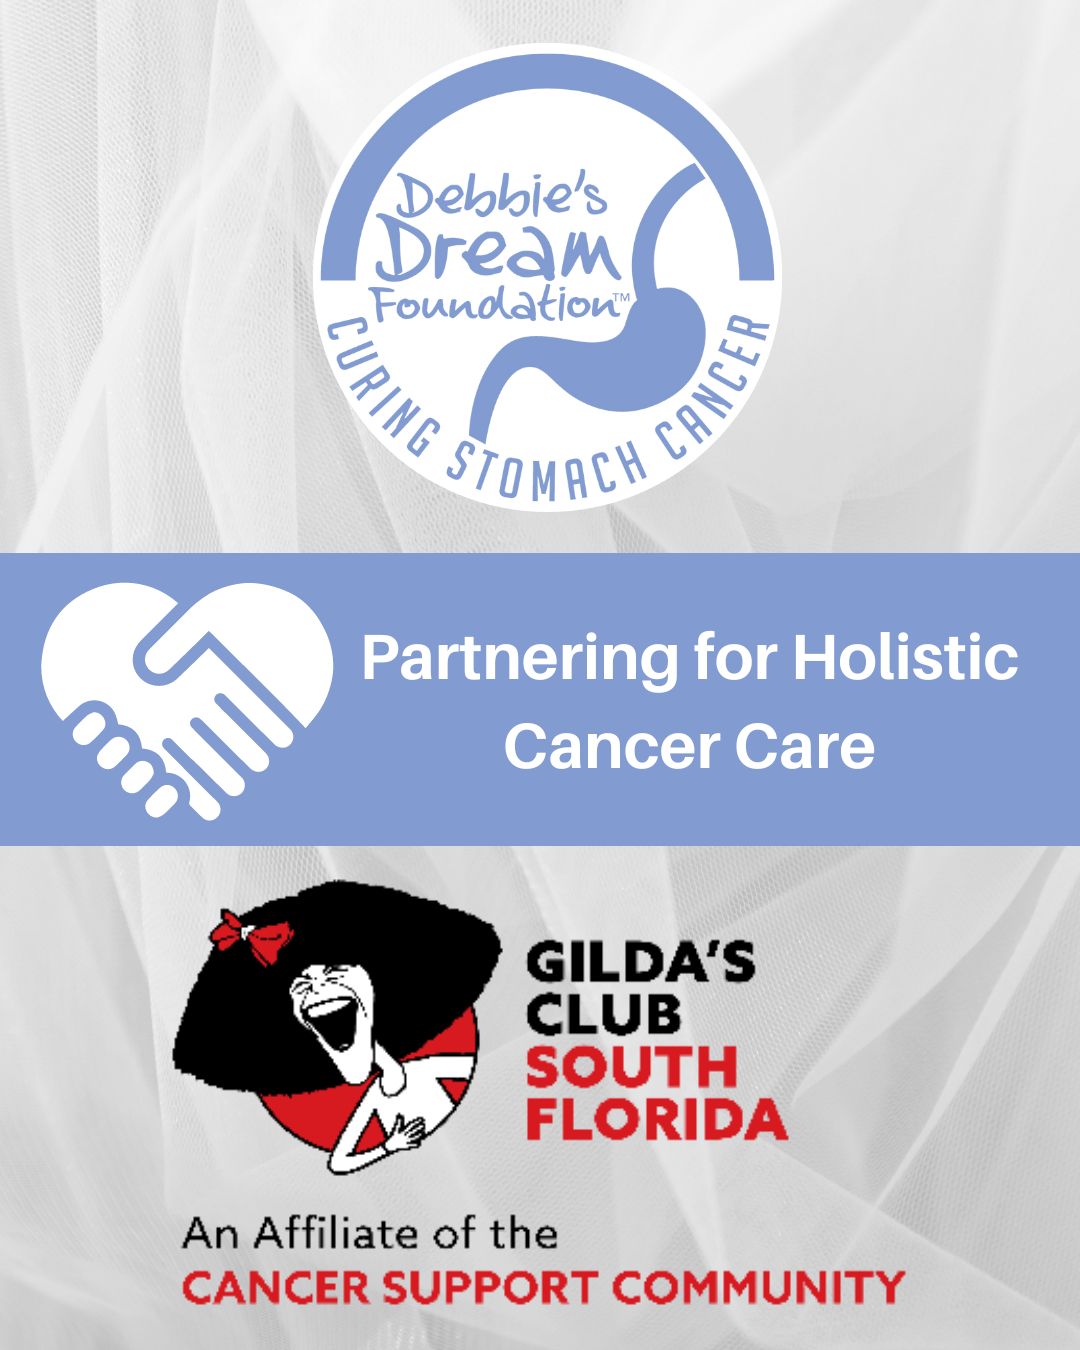 Debbie's Dream Foundation and Gilda's Club South Florida